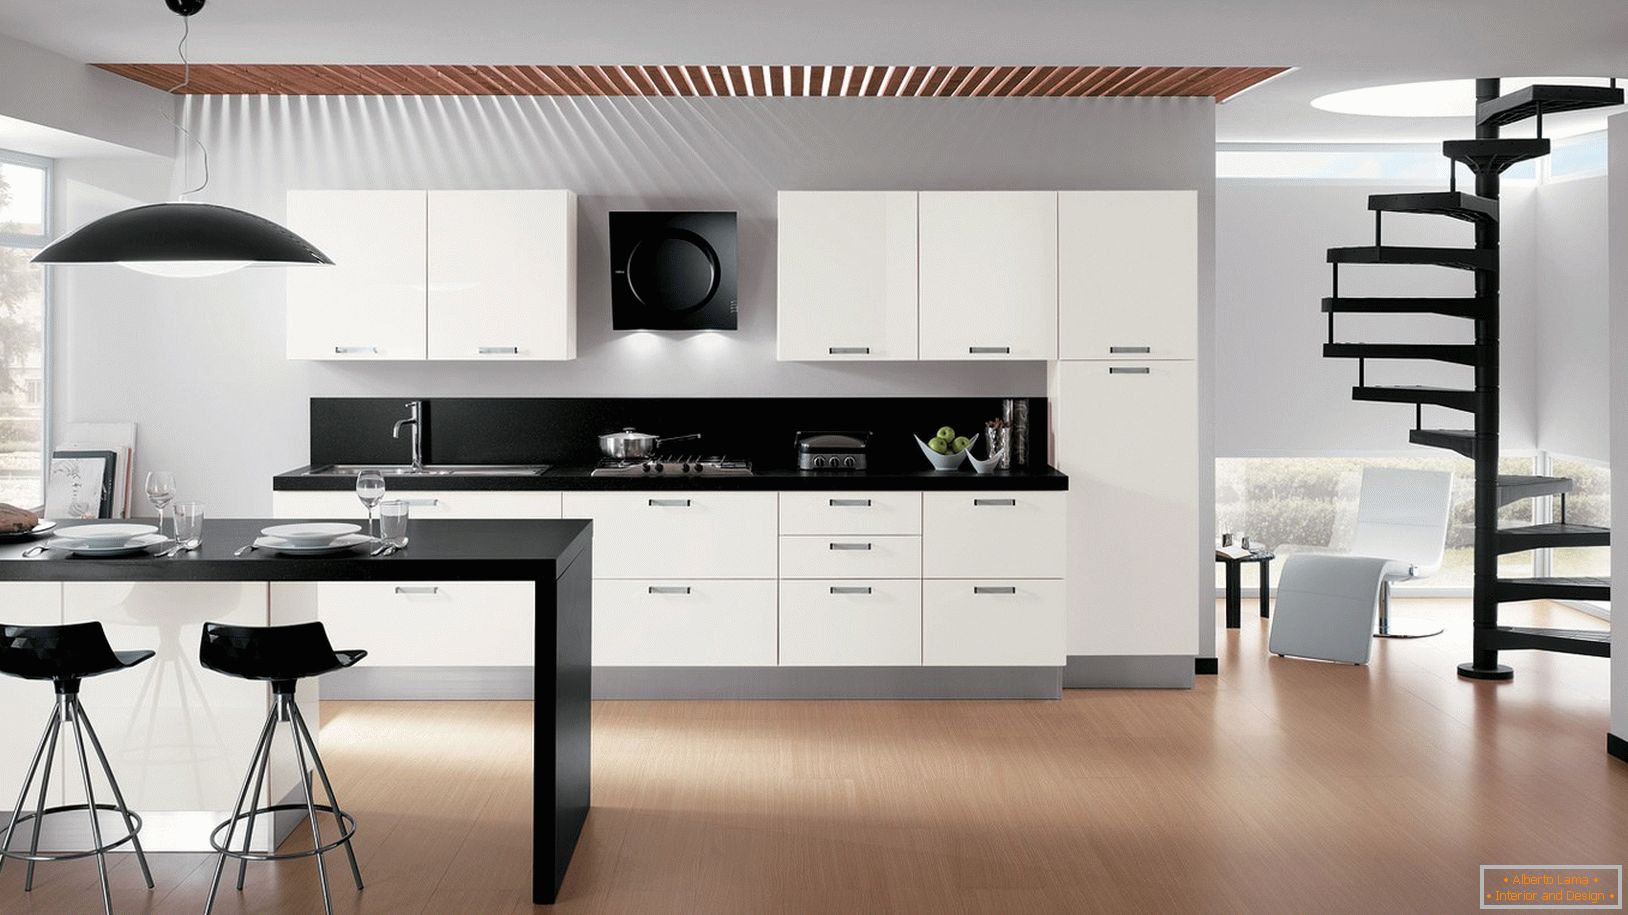 Kuchyňský design ve stylu minimalismu